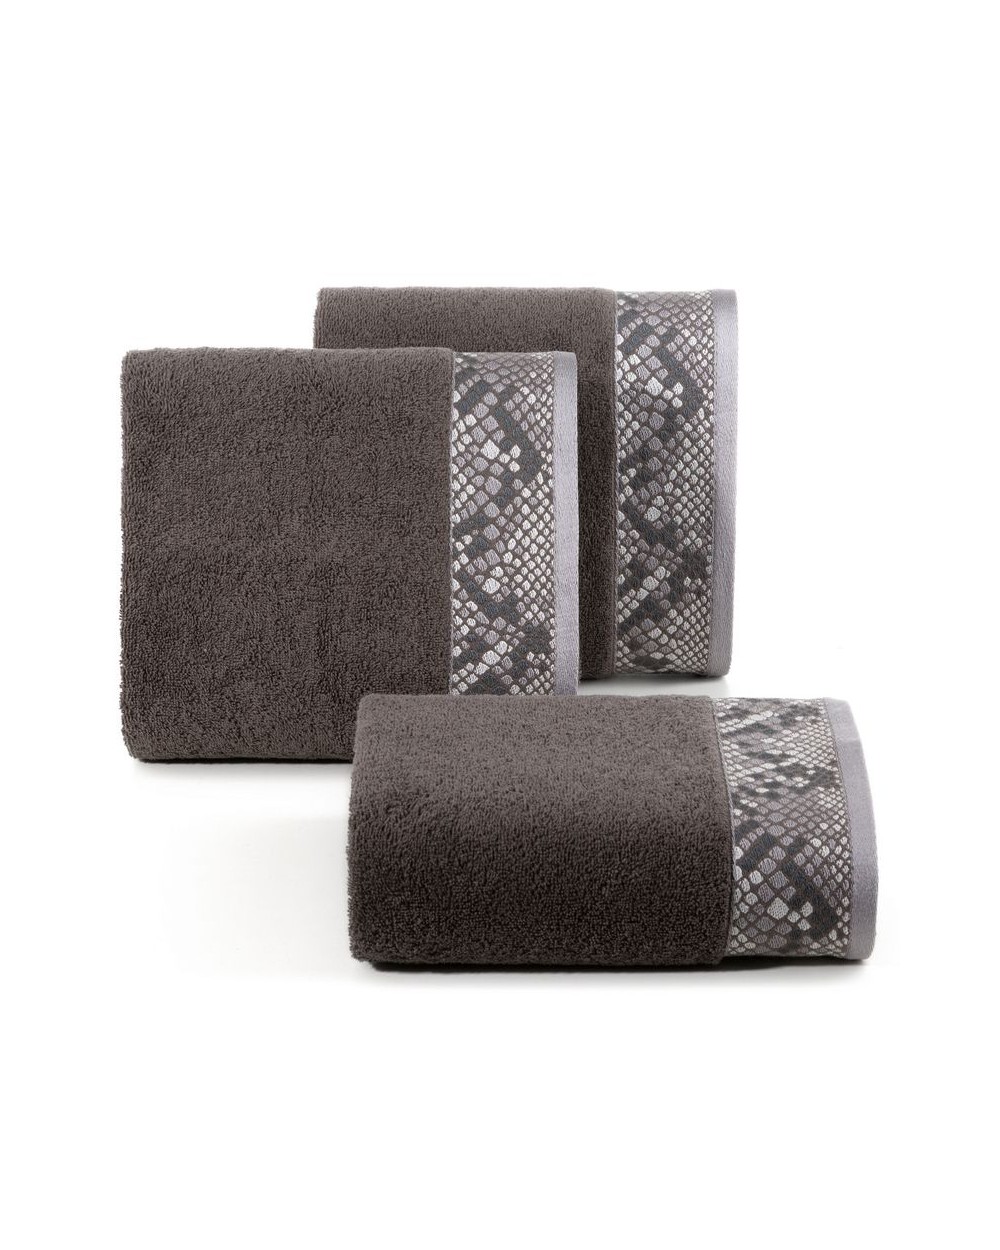 Ręcznik bawełna 70x140 Gisel ciemnobrązowy